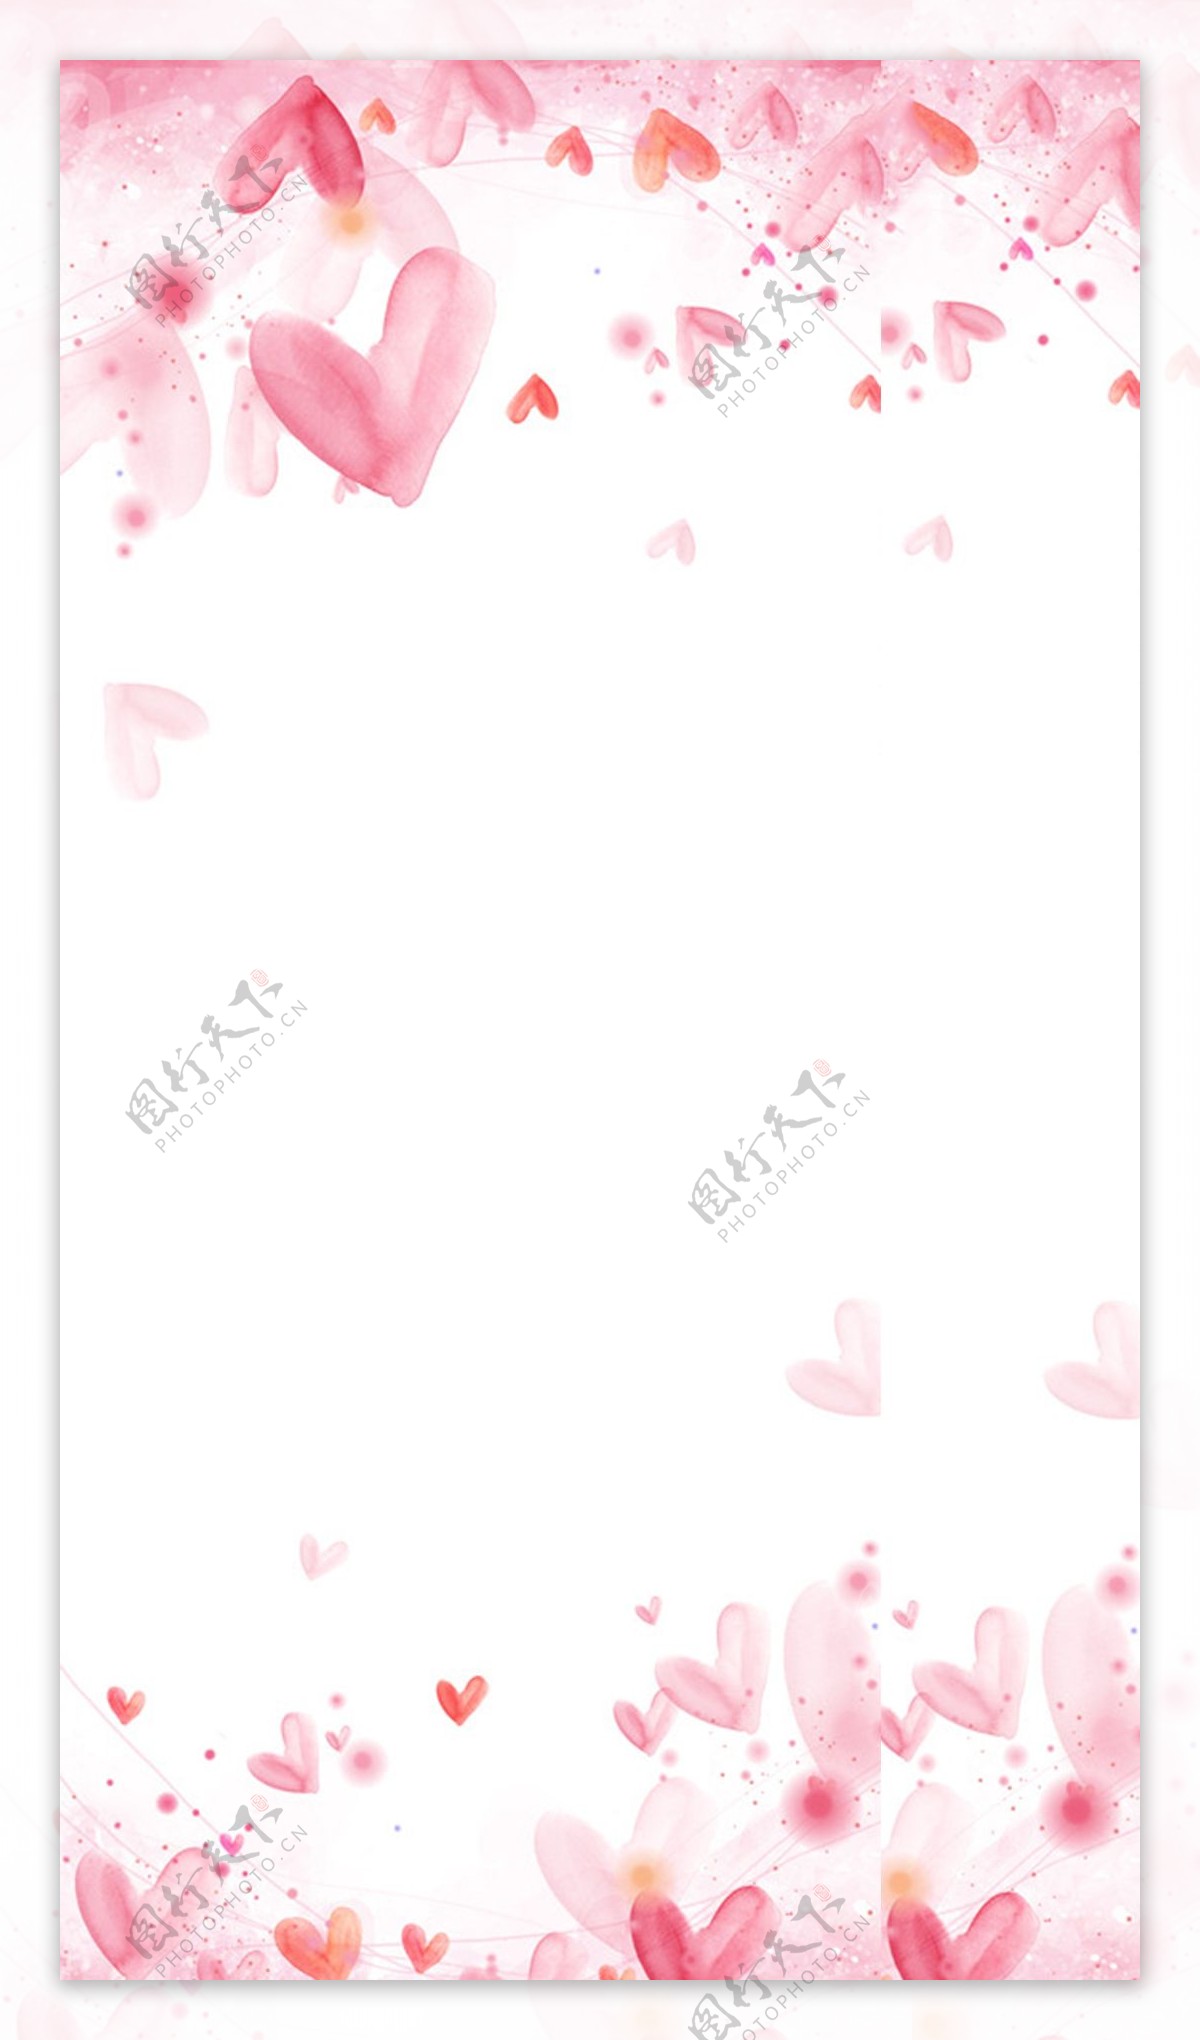 梦幻粉色花朵H5背景素材